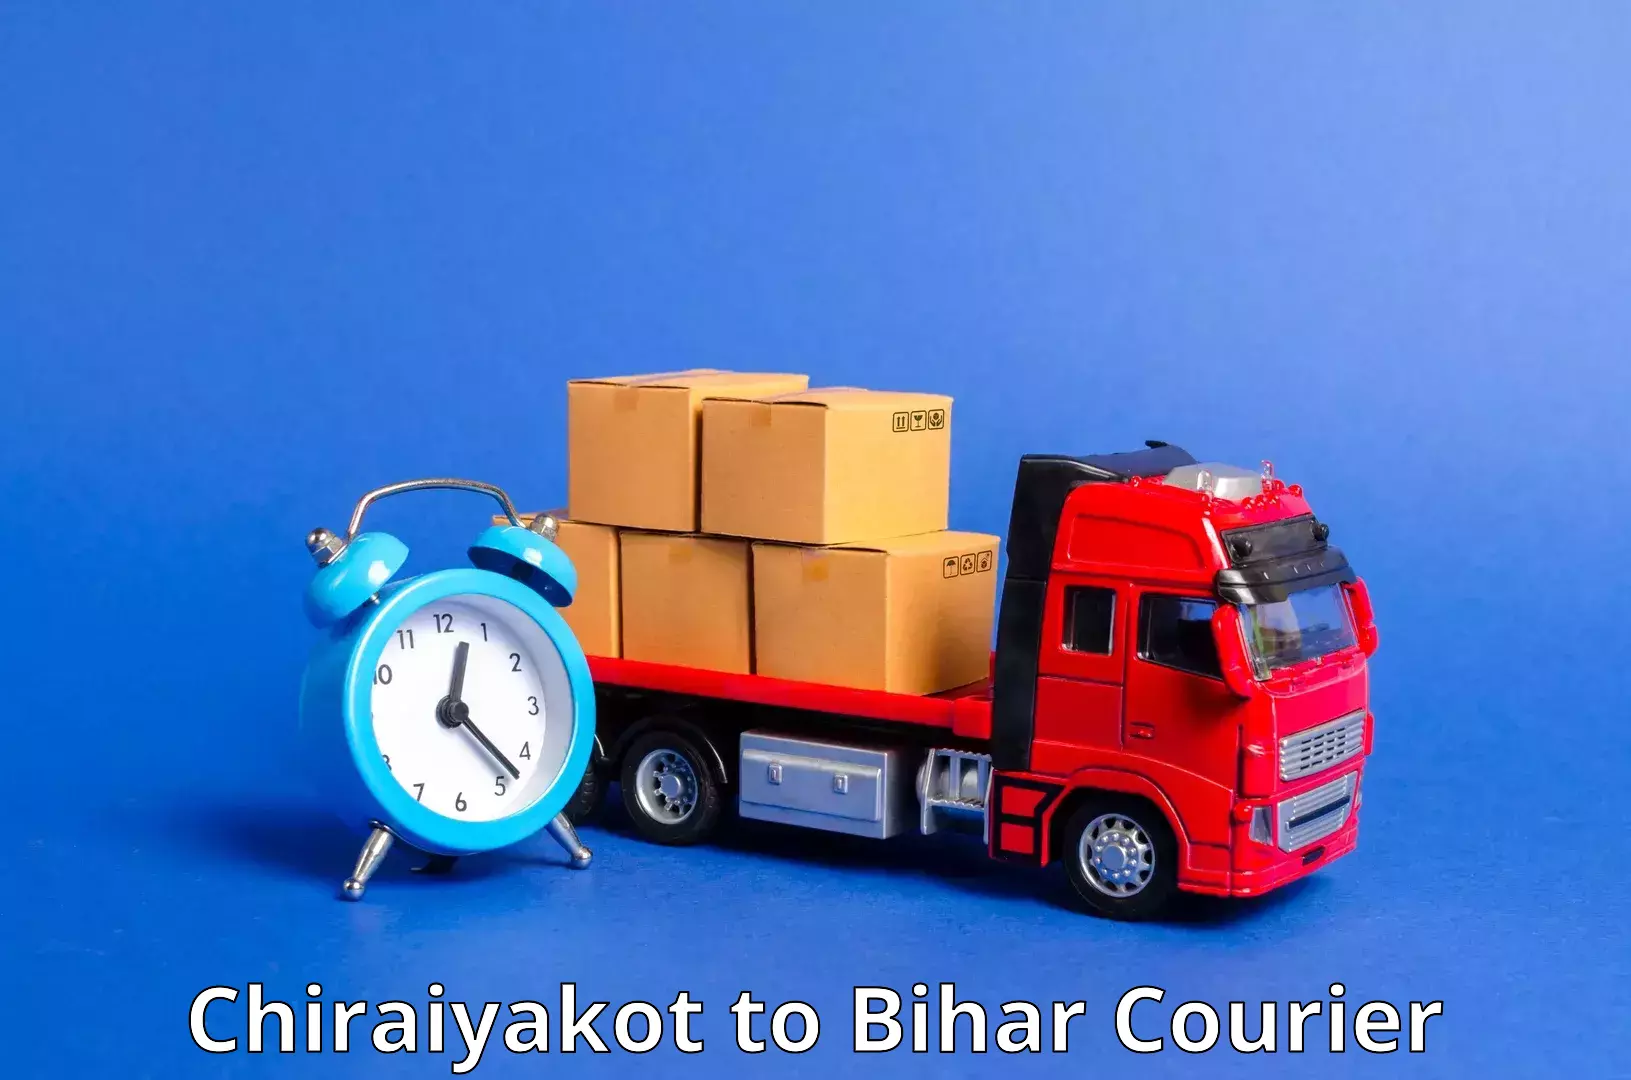 Global logistics network Chiraiyakot to Bharwara